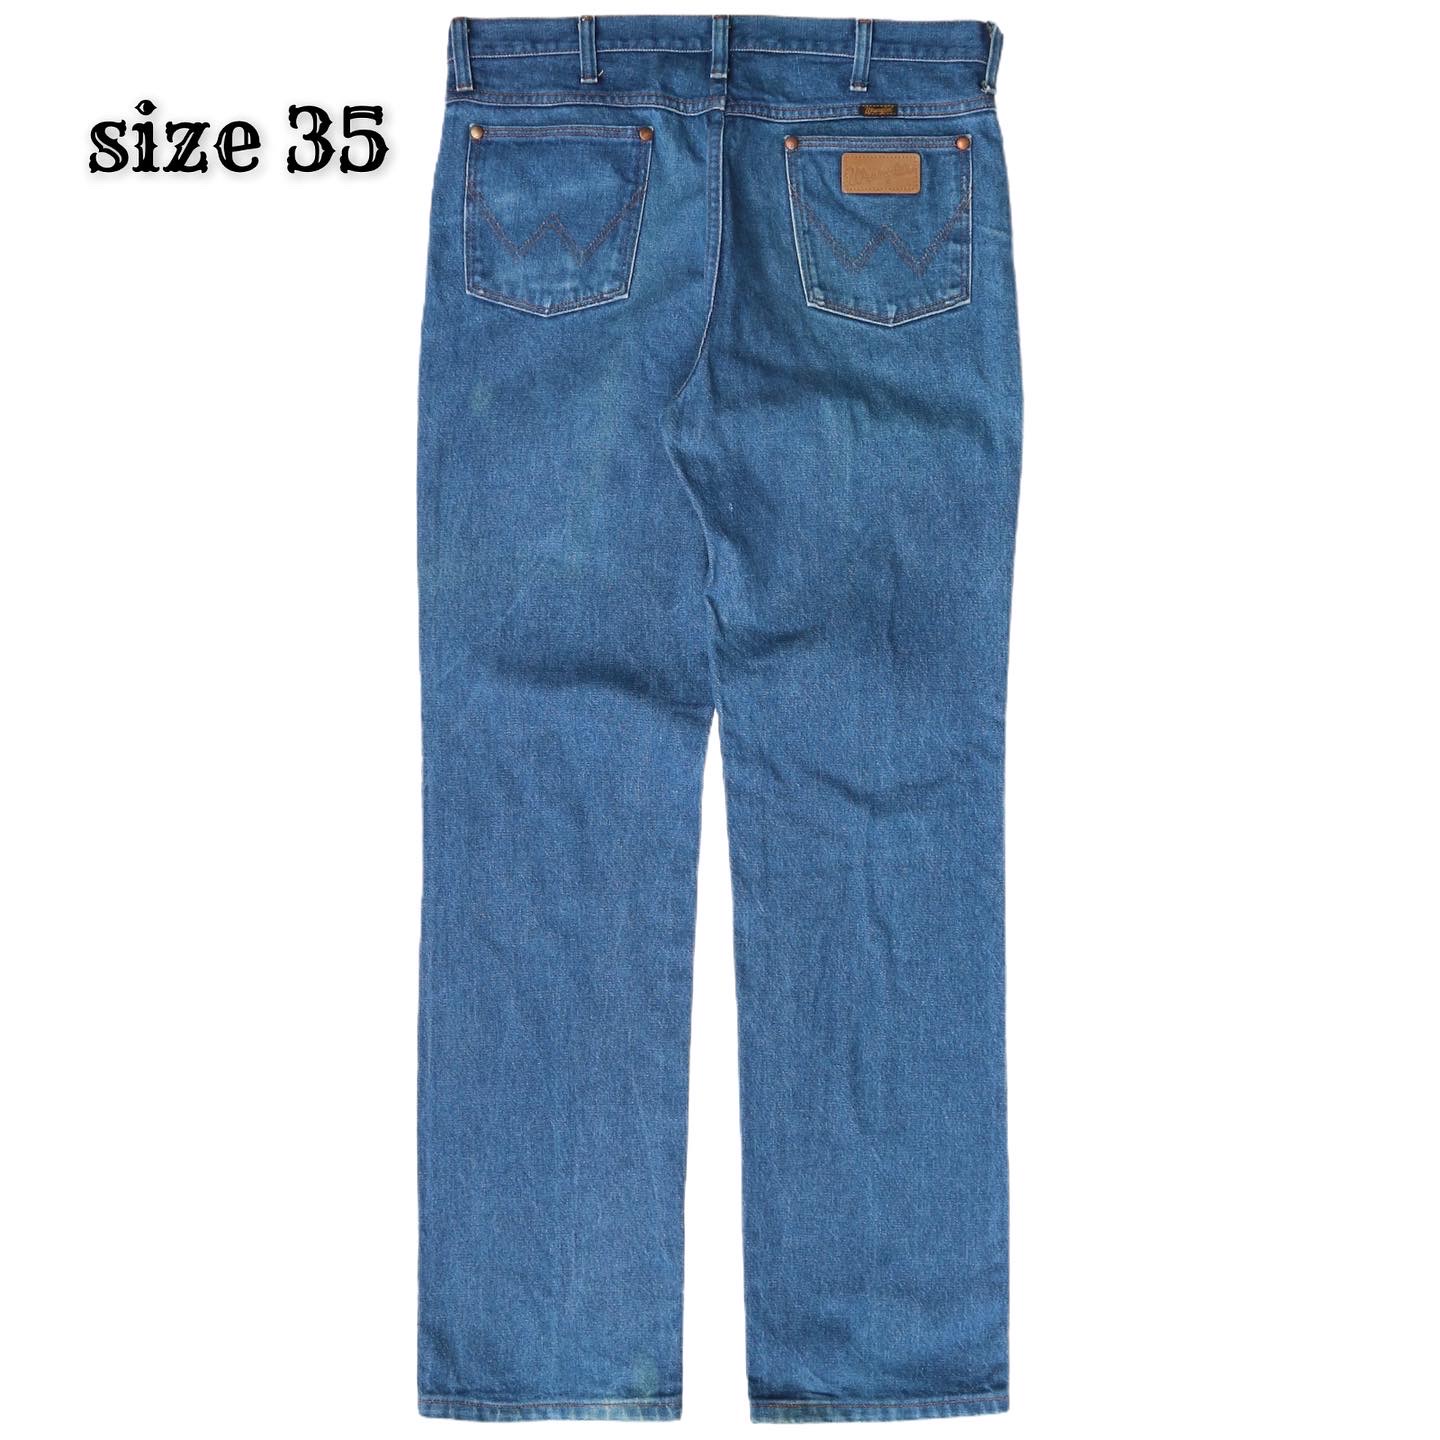 Wrangler Jeans Size 35 denimister